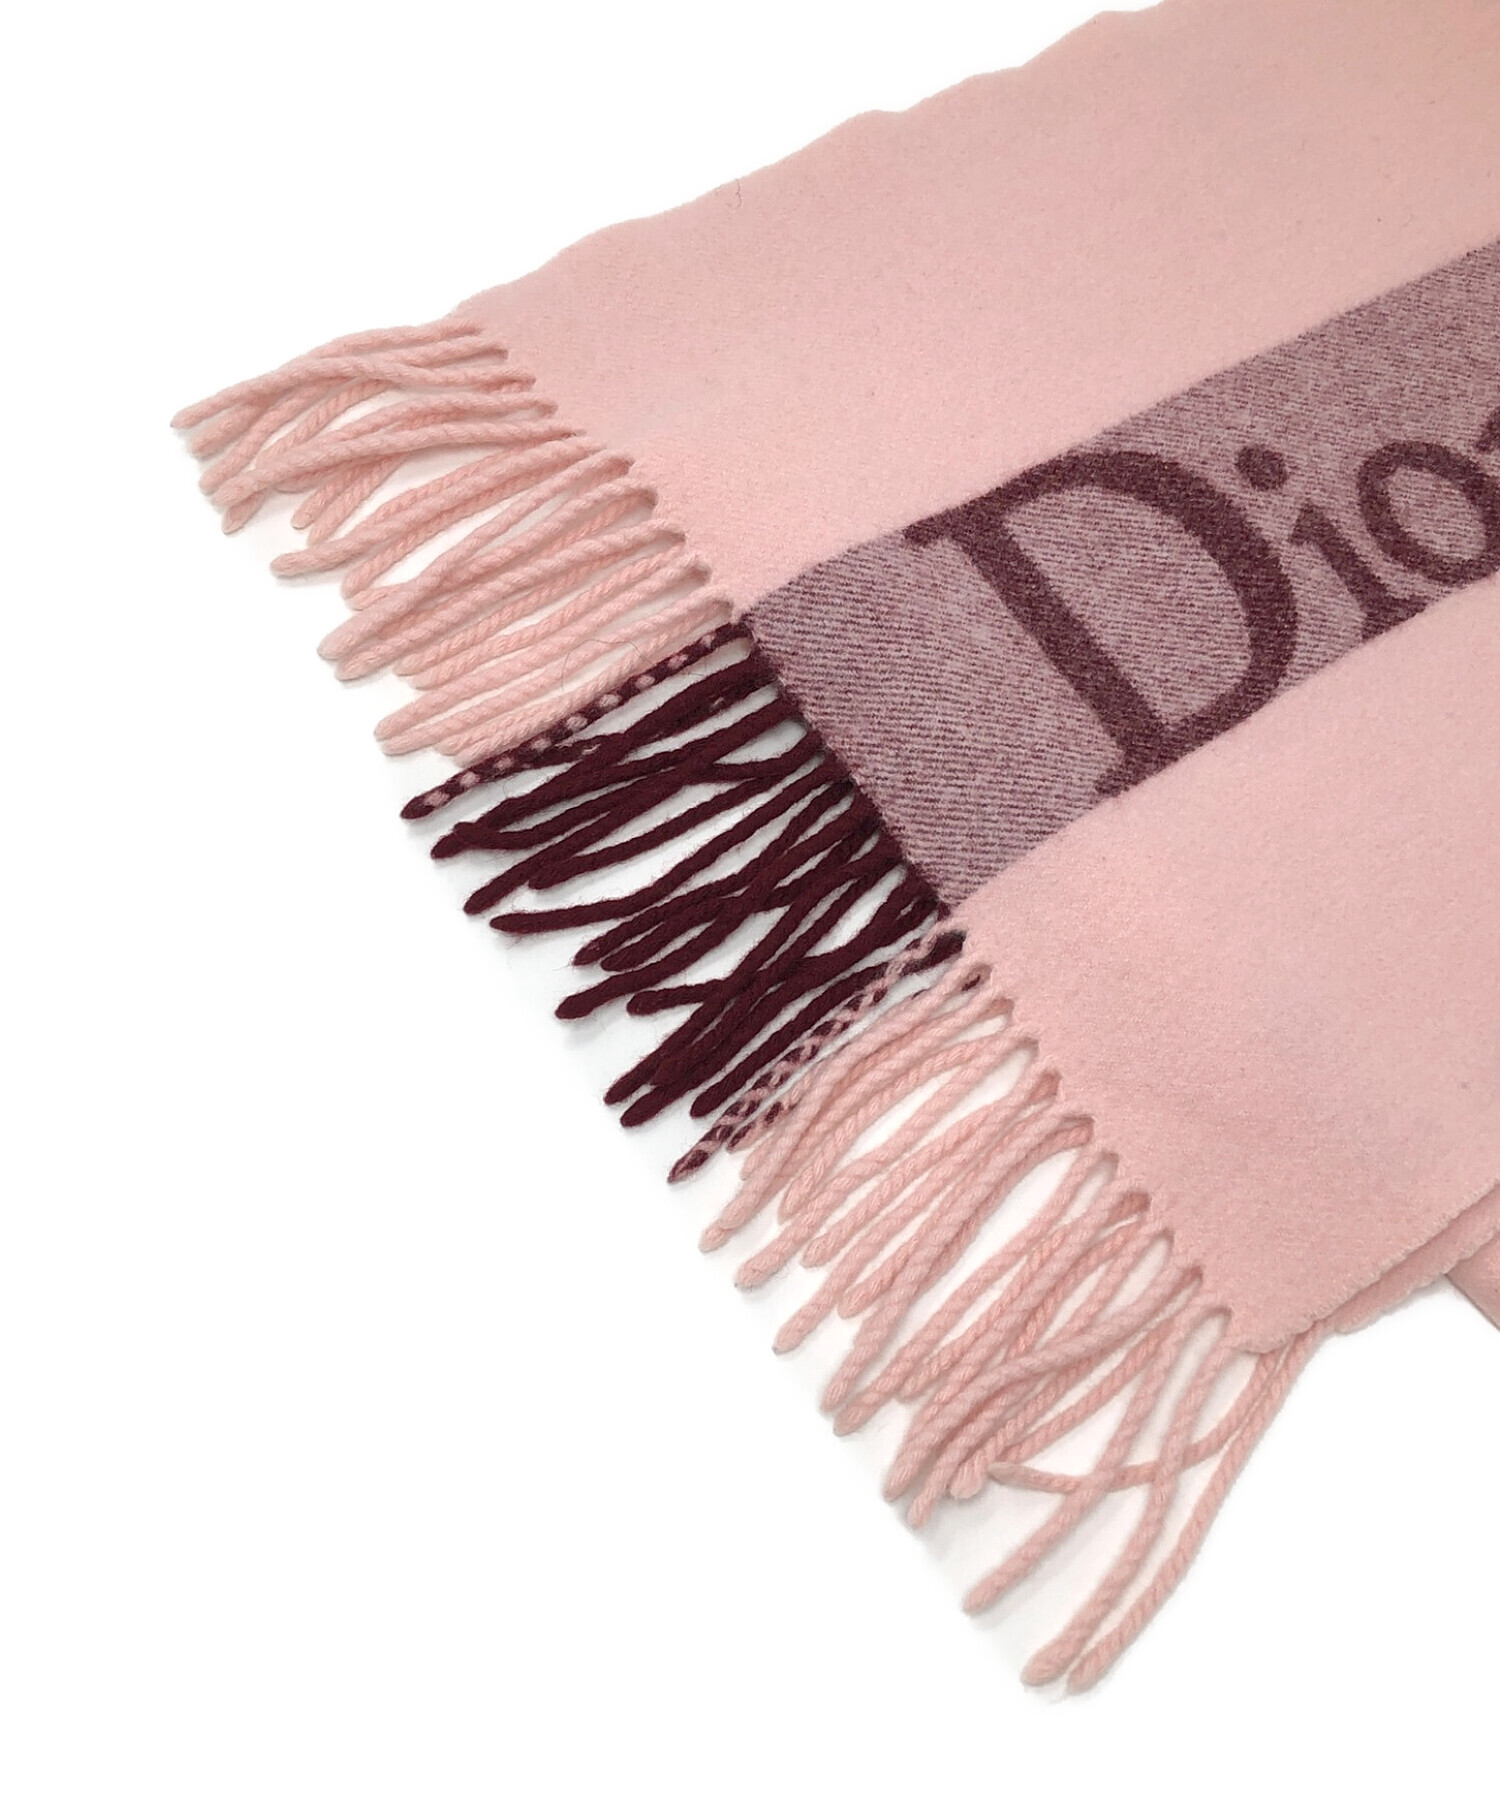 Christian Dior (クリスチャン ディオール) マフラー ピンク サイズ:実寸サイズにてご確認ください。